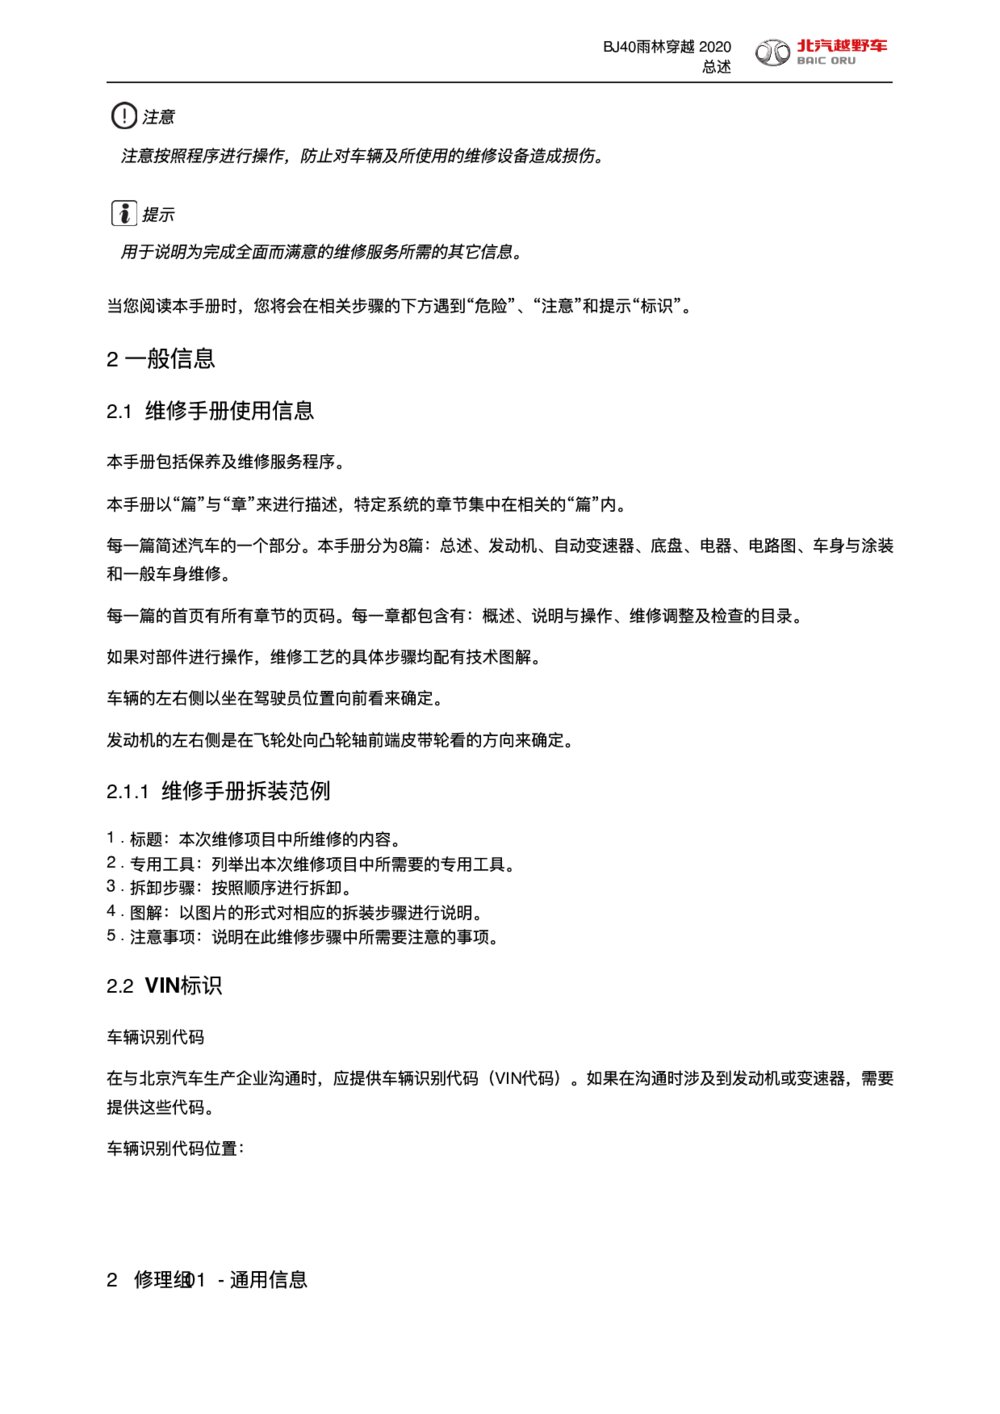 2020款北京BJ40雨林穿越版维修手册使用信息1